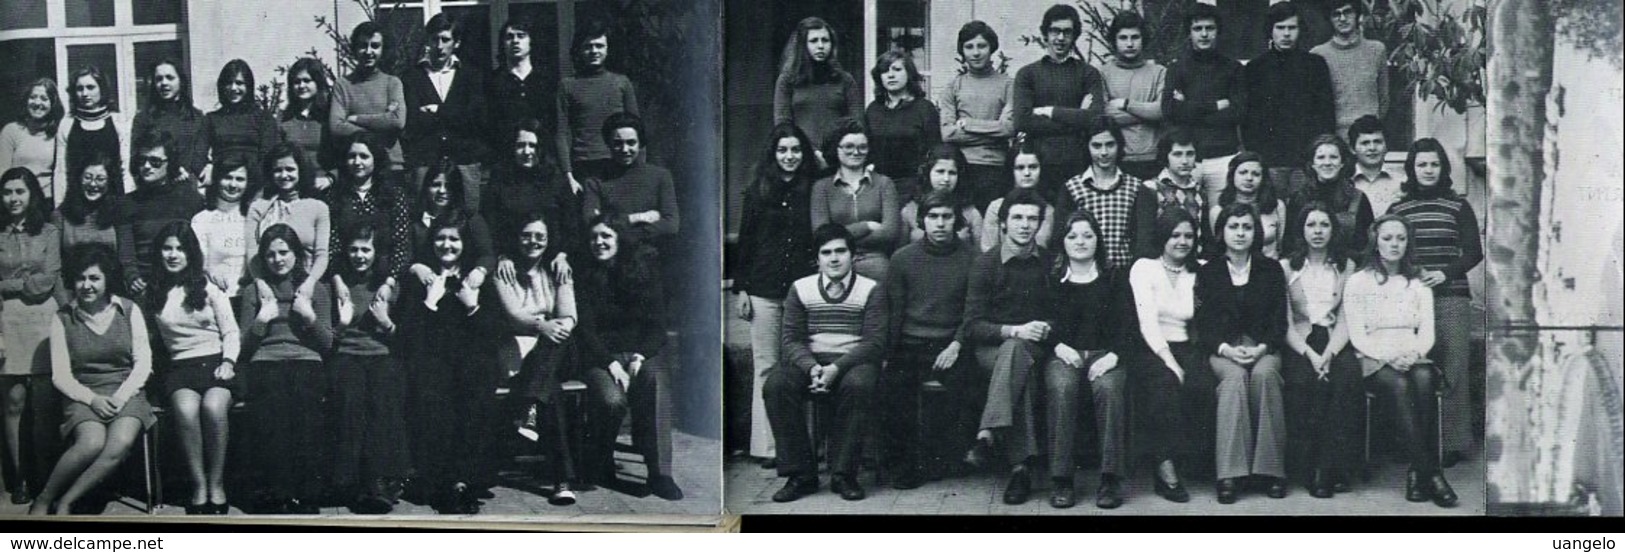 V3 NOI " MICHELANGIOLO " 1972 - 73  FOTO E NOMI DEGLI ALUNNI (  Istituto Tecnico Commerciale Via Cavour 258 Di Roma ) - Diploma's En Schoolrapporten